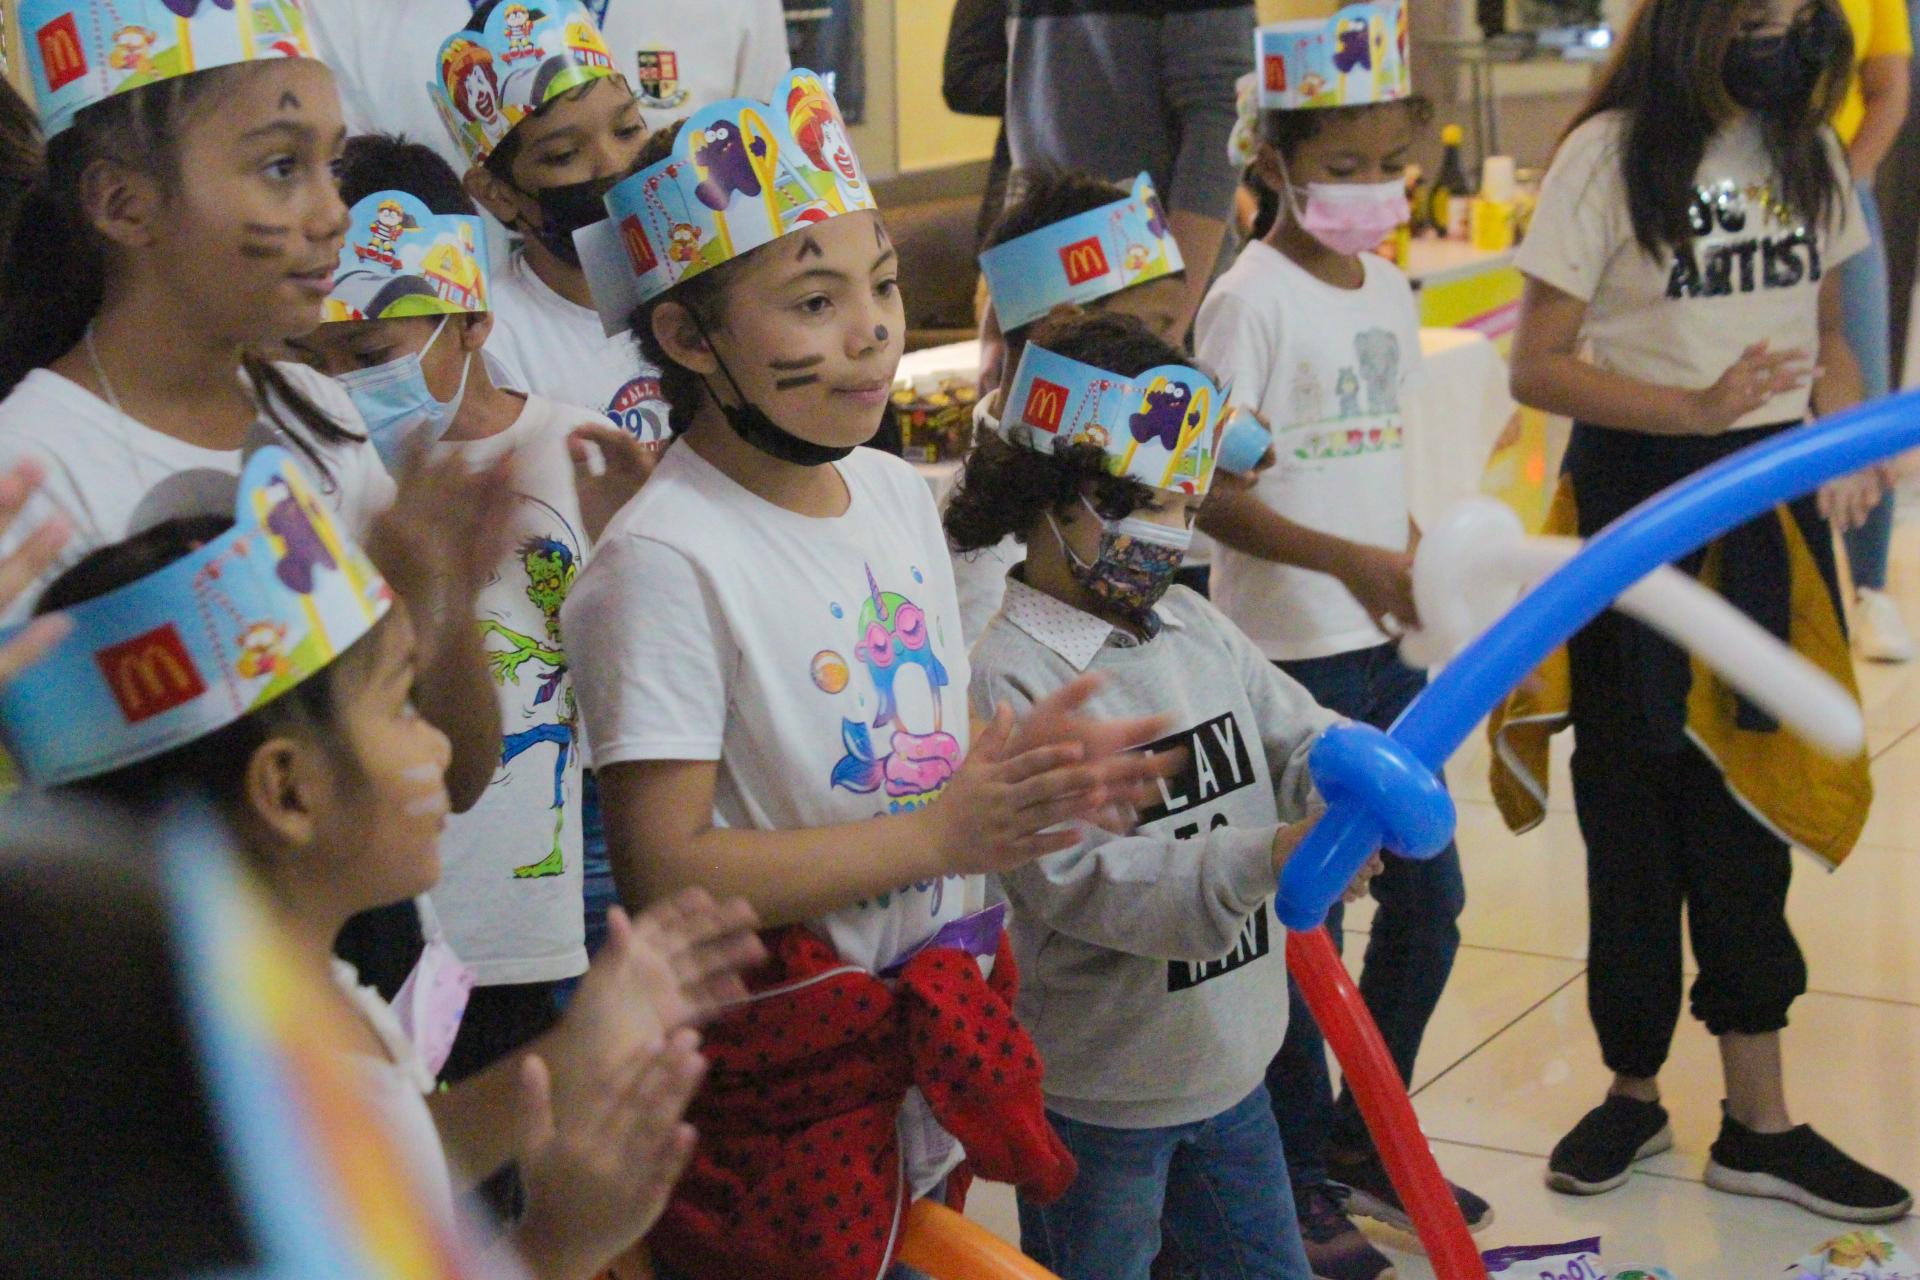 ¡Los pequeños la pasaron genial y disfrutaron de muchas actividades y regalos en la premier de ‘Lightyear’!